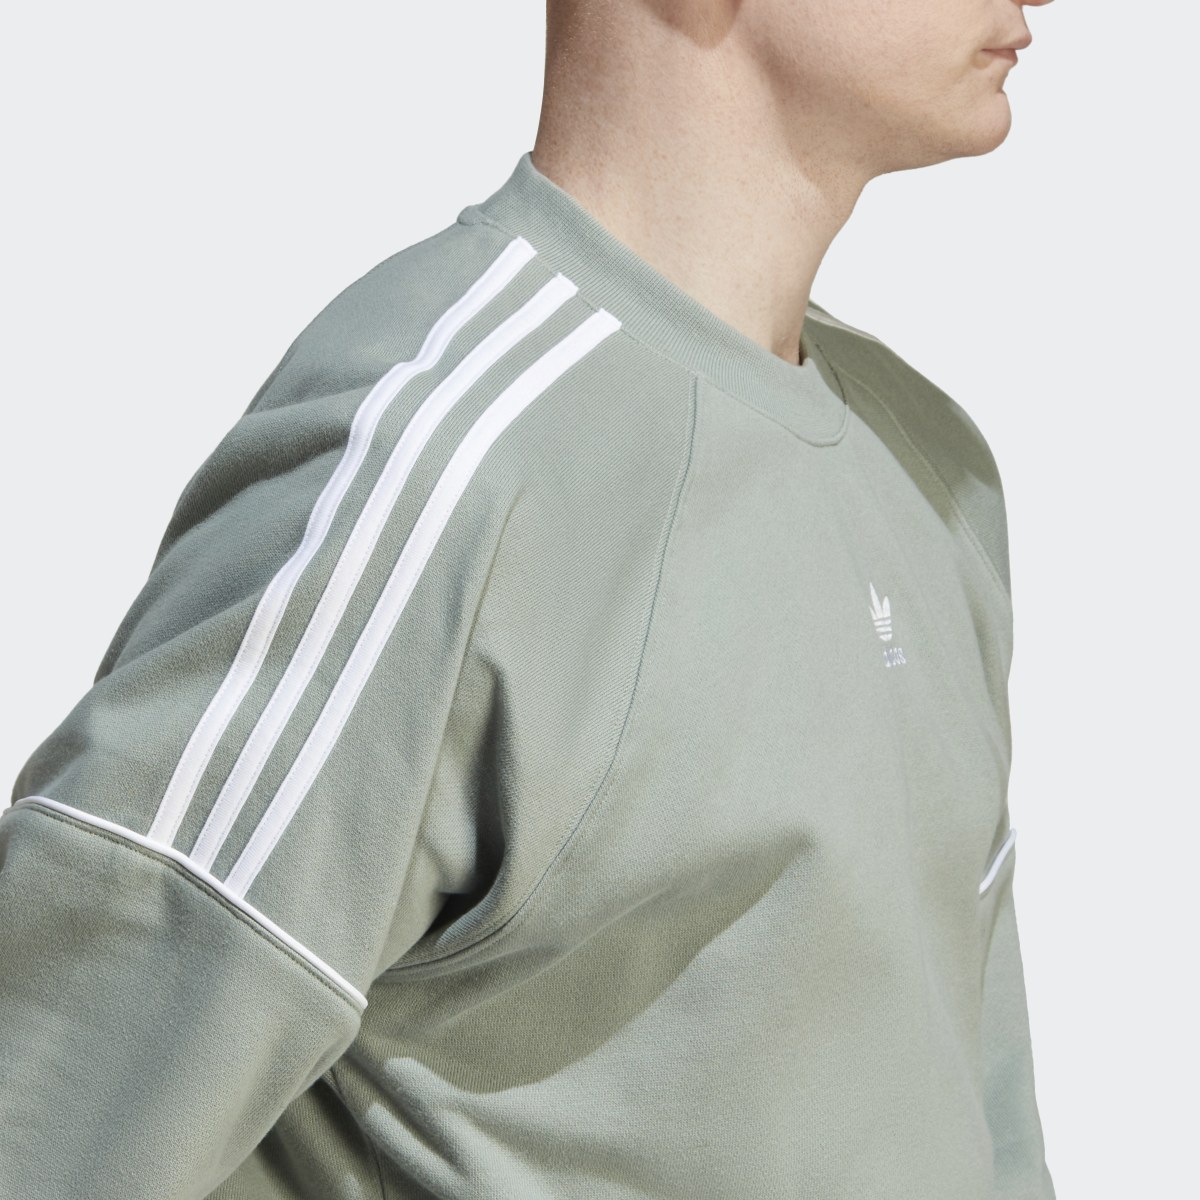 Adidas Rekive Crew Sweatshirt. 9